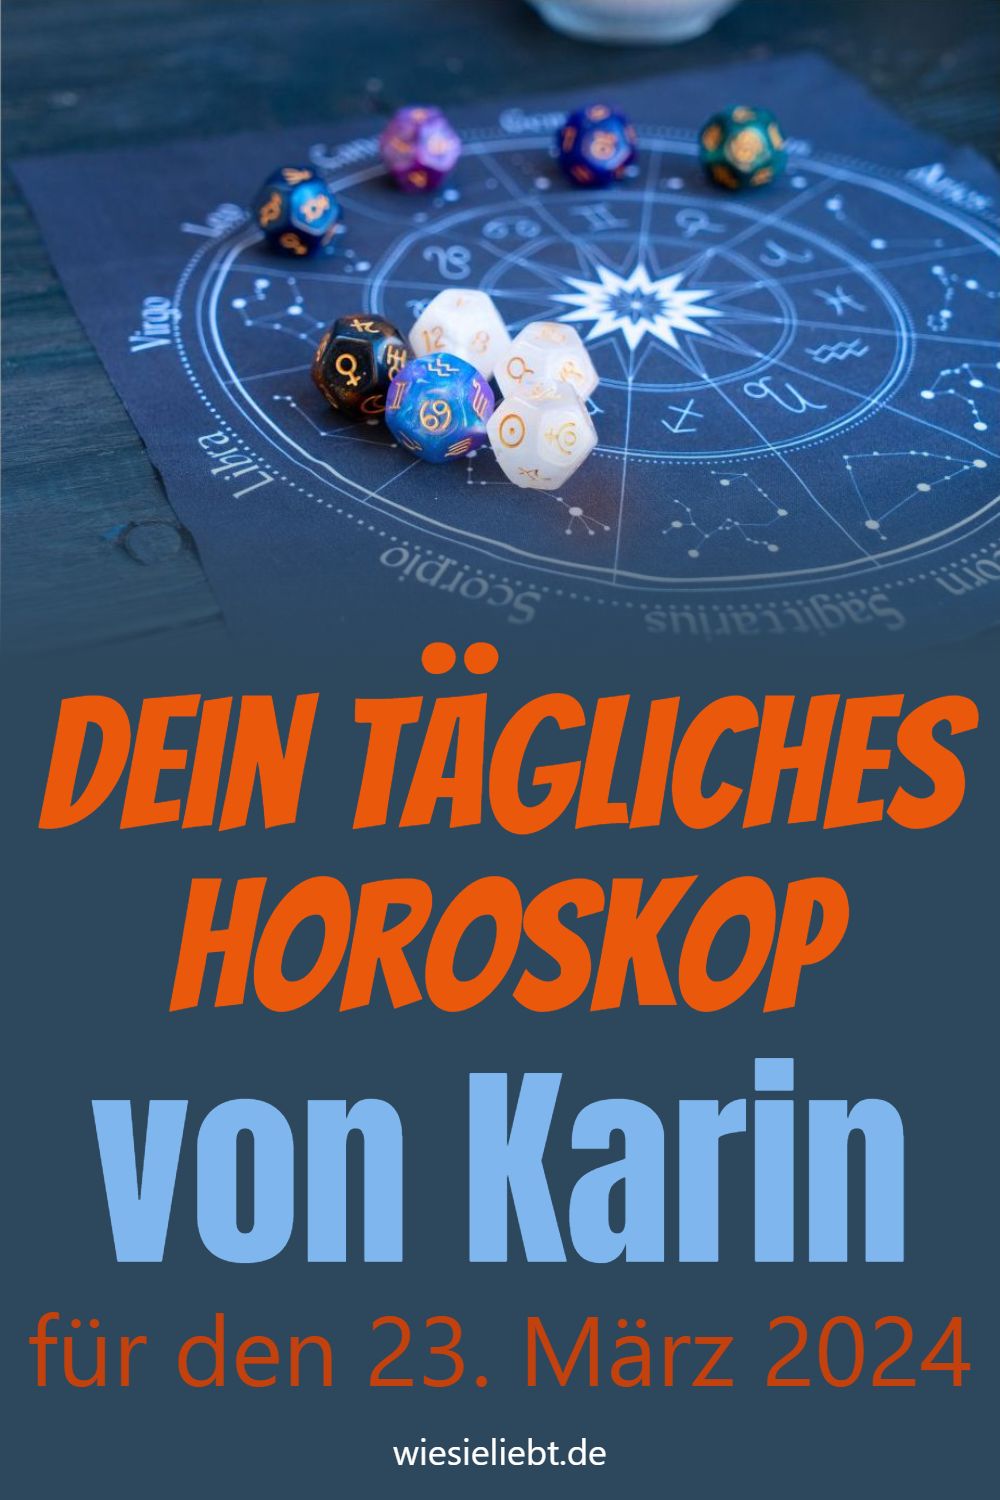 Dein tägliches Horoskop von Karin für den 23. März 2024